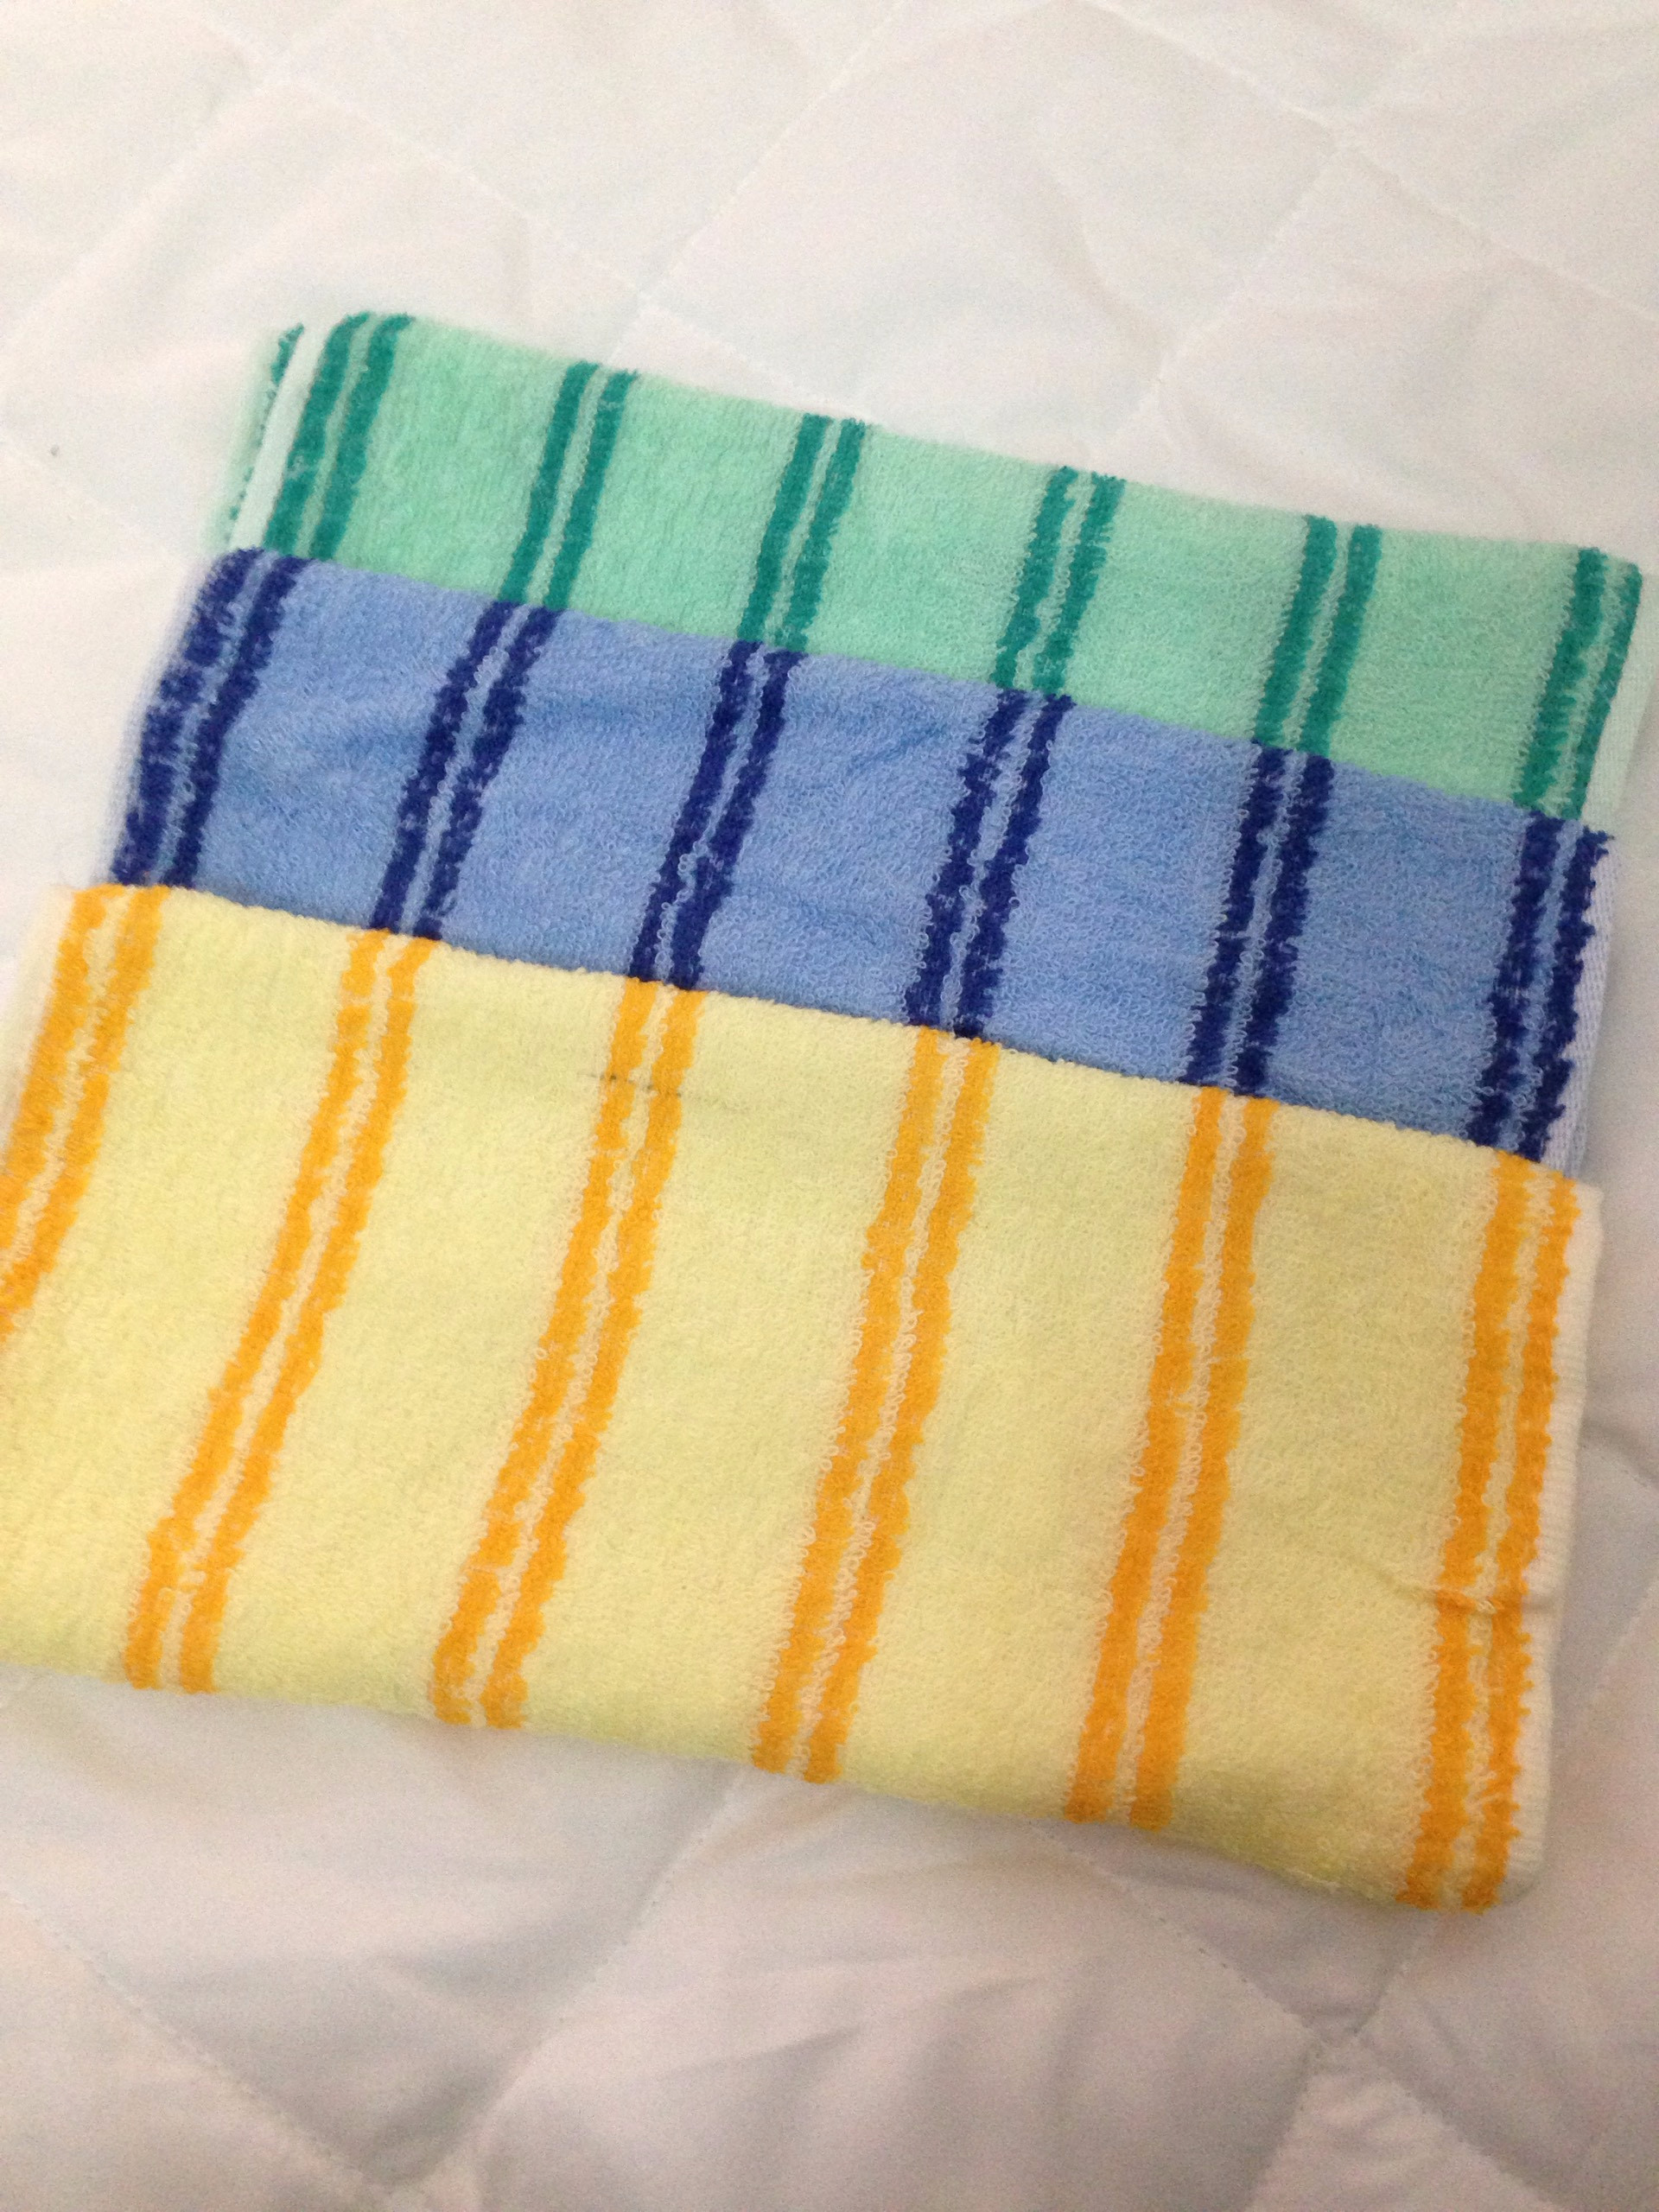 Gối Mây Đan Tổng Hợp Thoáng Mát - Tặng kèm 01 khăn lau mặt - Màu vàng xanh